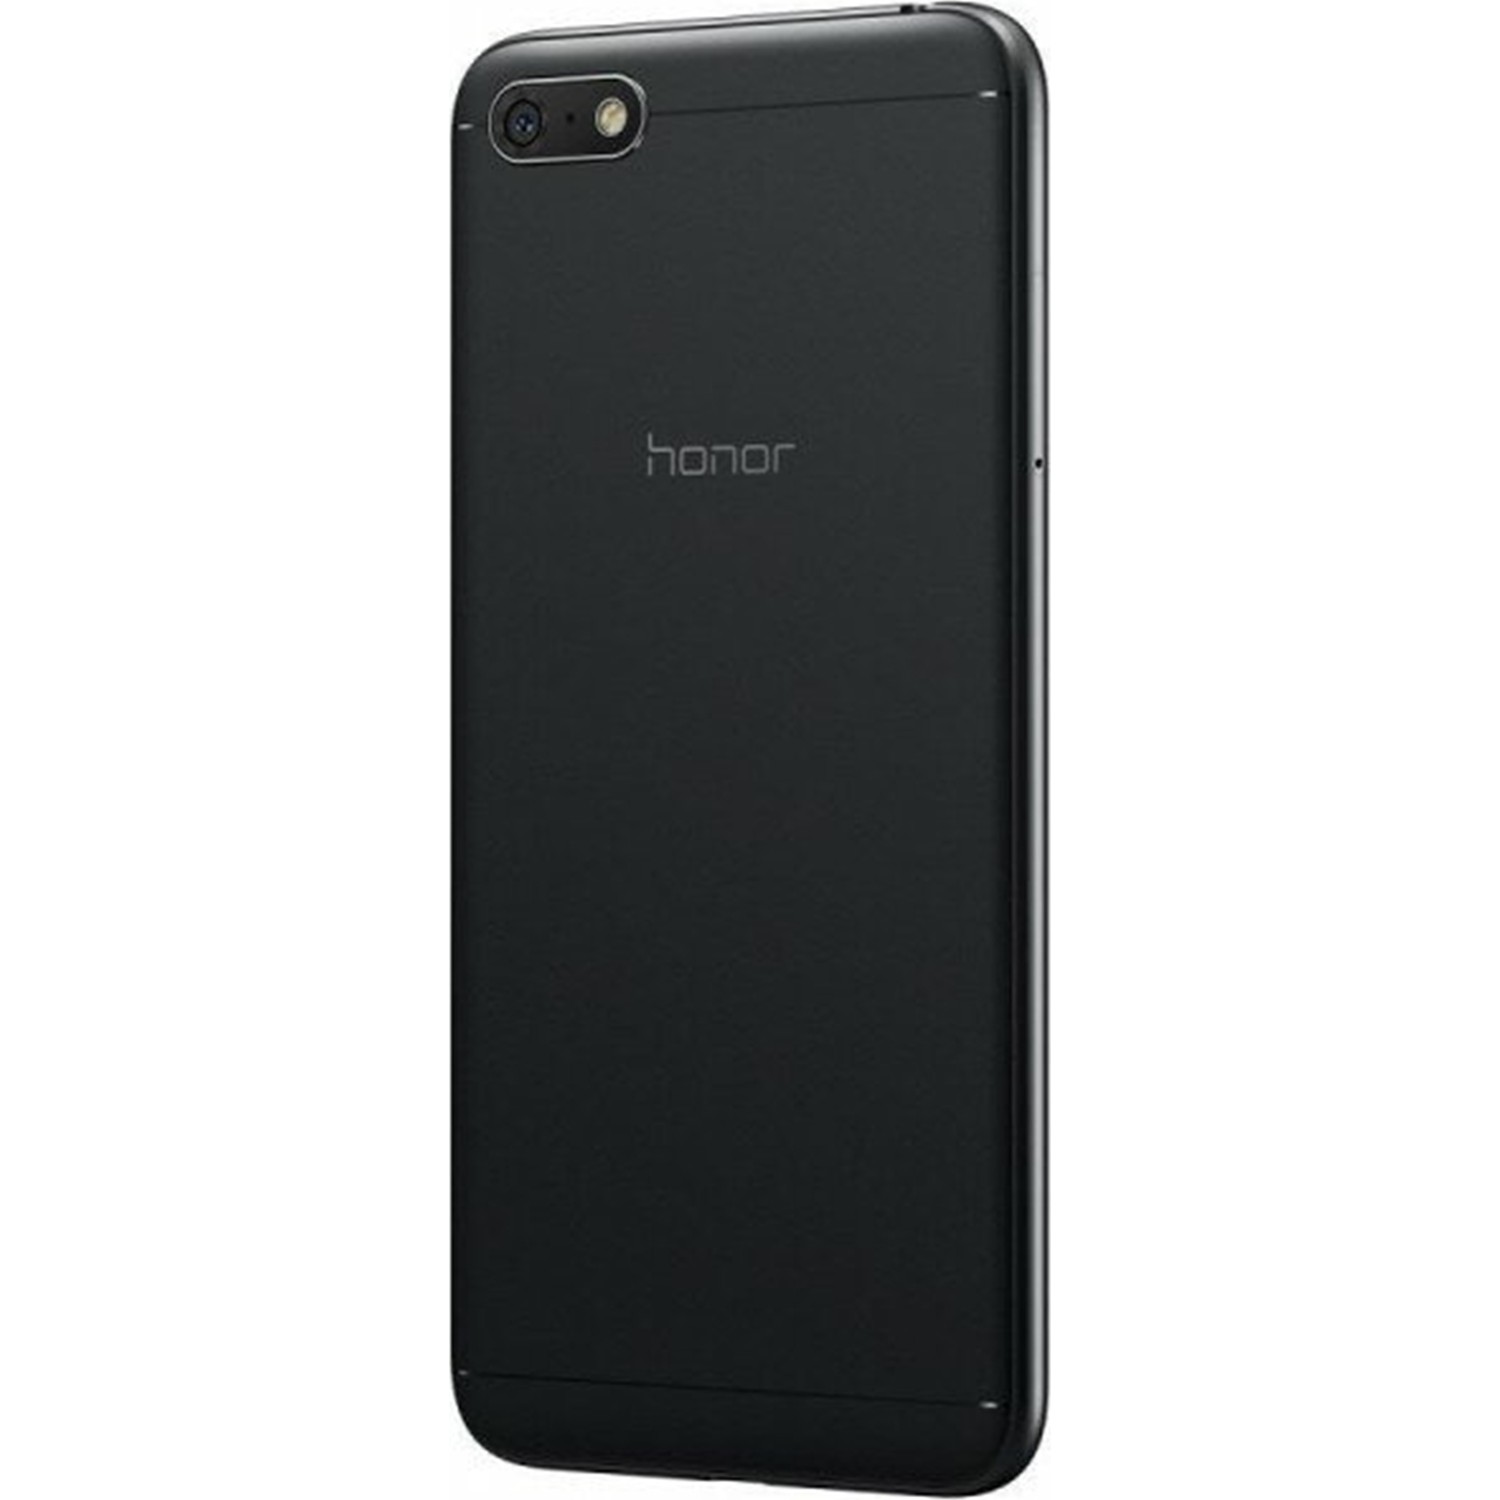 Honor 7a аккумулятор. Huawei Honor 7a. Смартфон Honor 7s 16gb. Huawei Honor 7a 5.7. Honor 7a 5.45 inch.